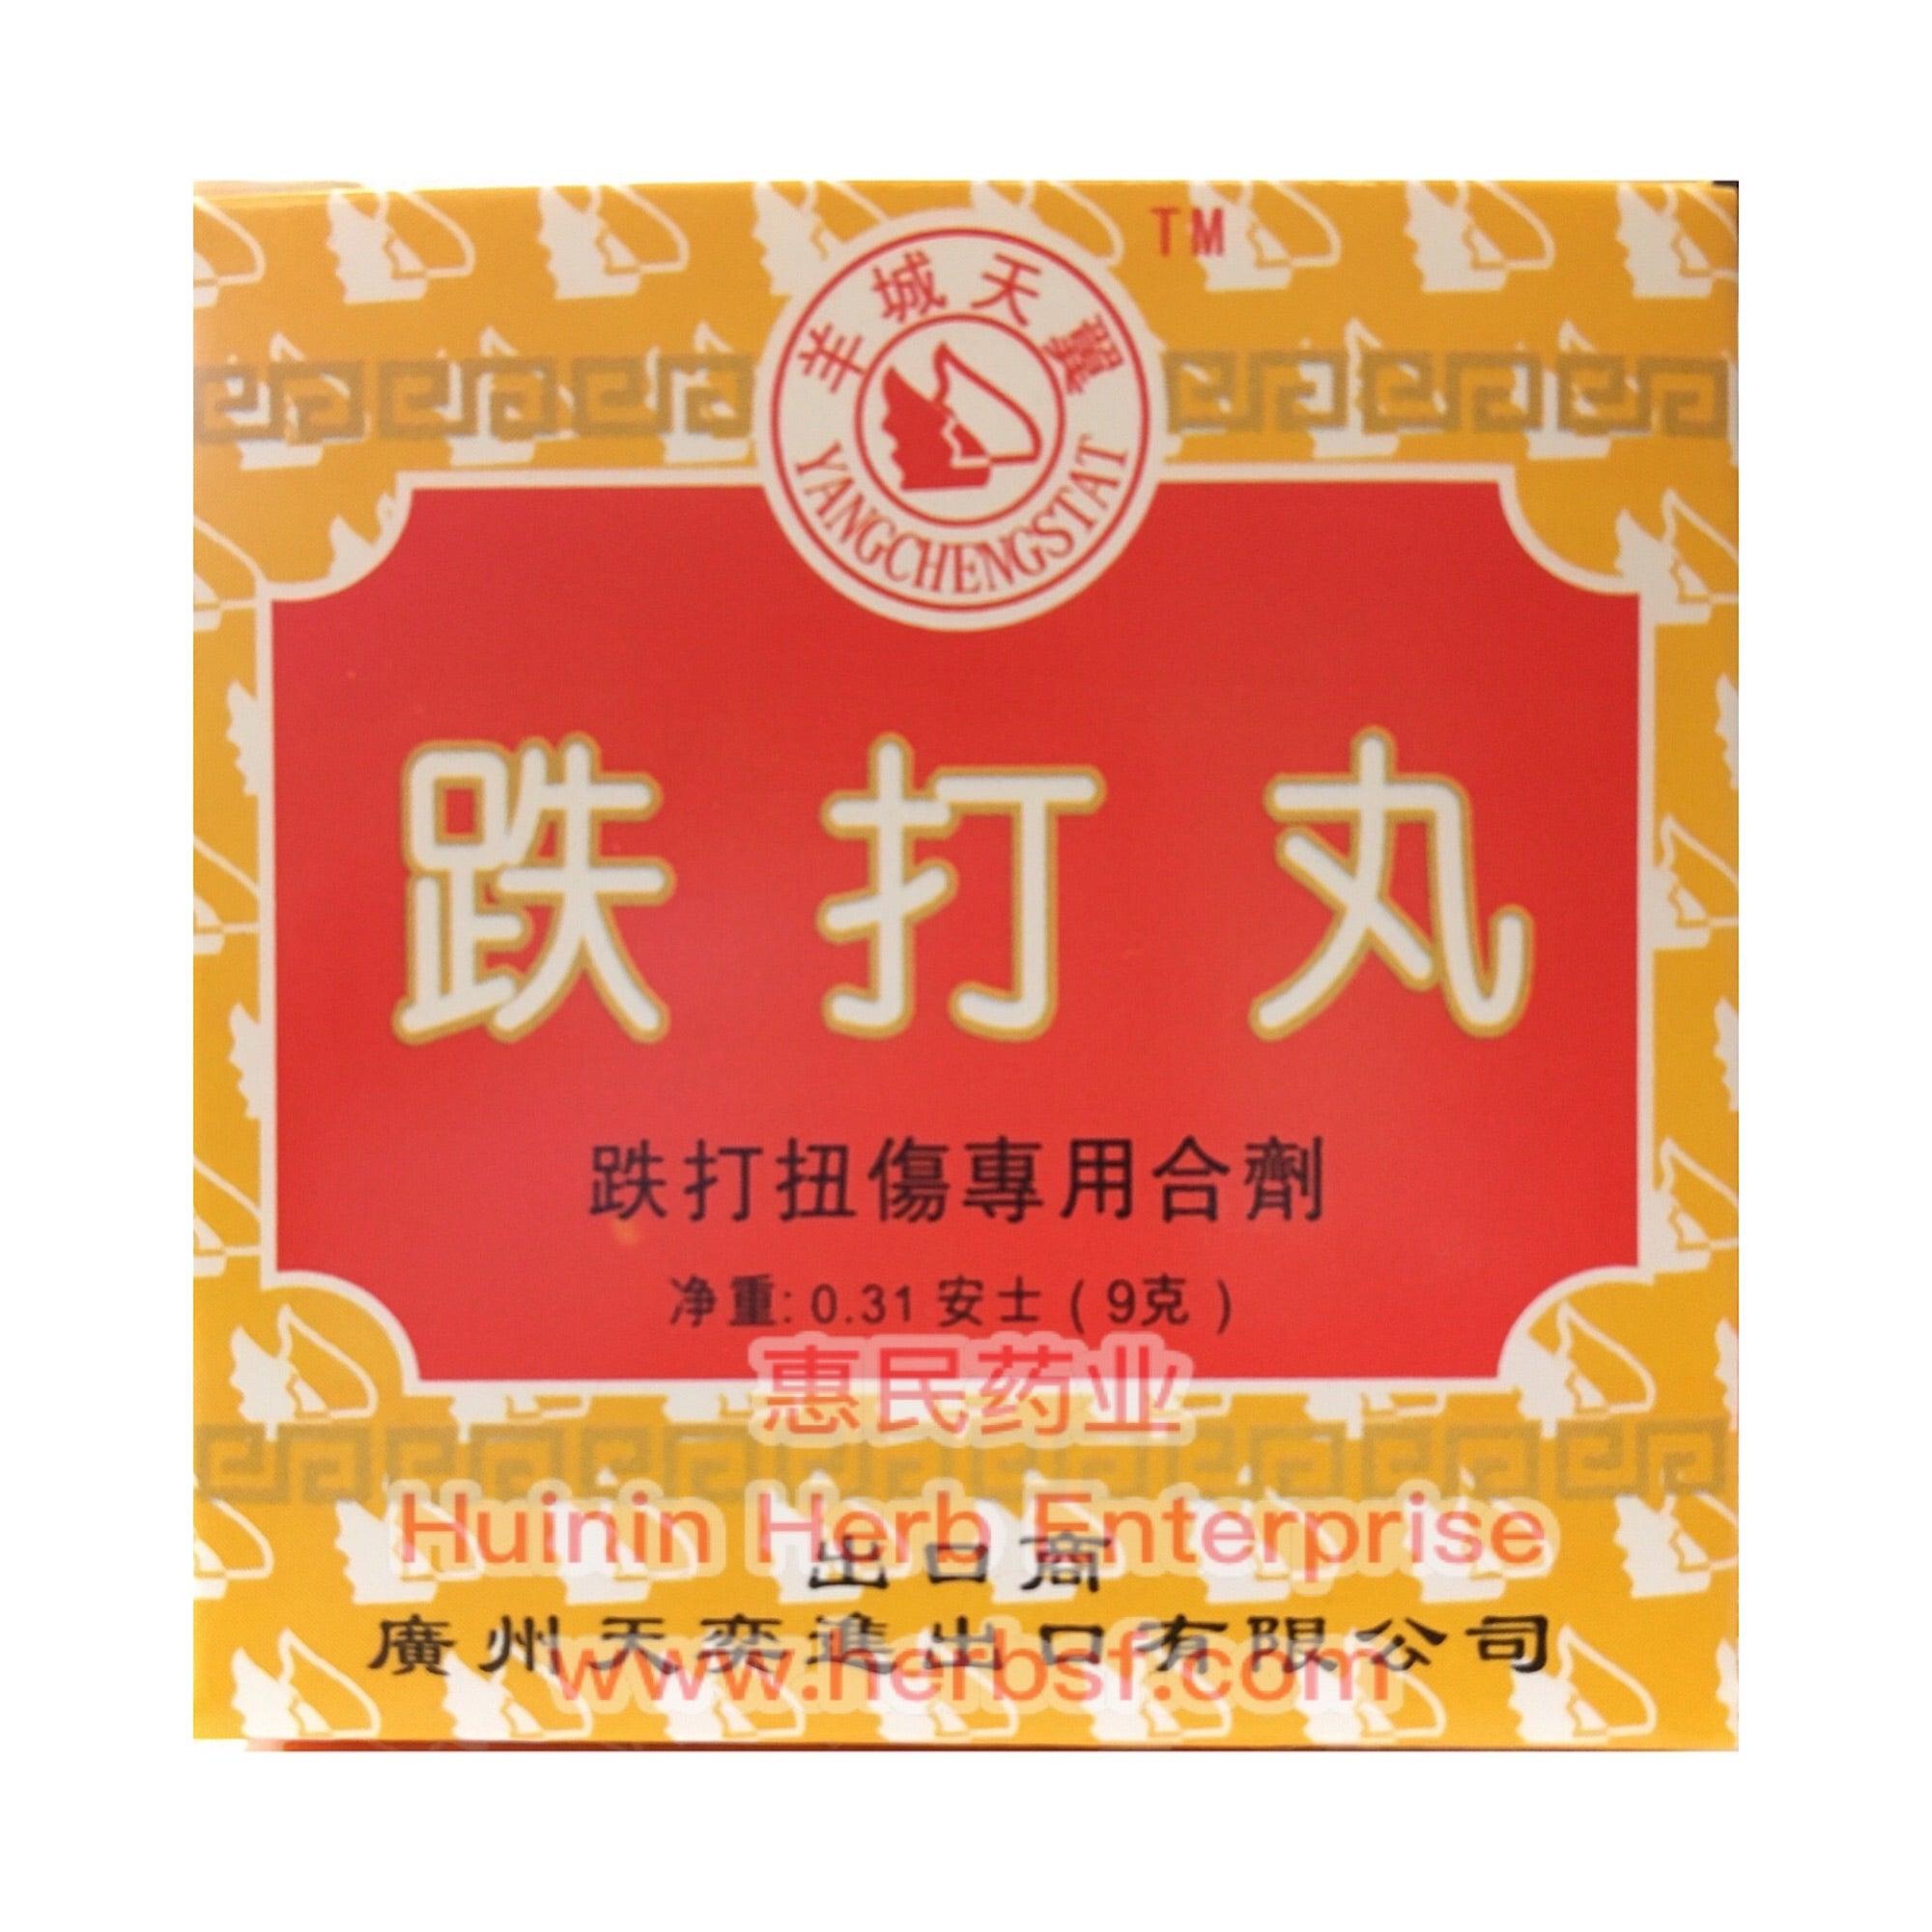 Die Da Wan - Huimin Herb Online, LLC